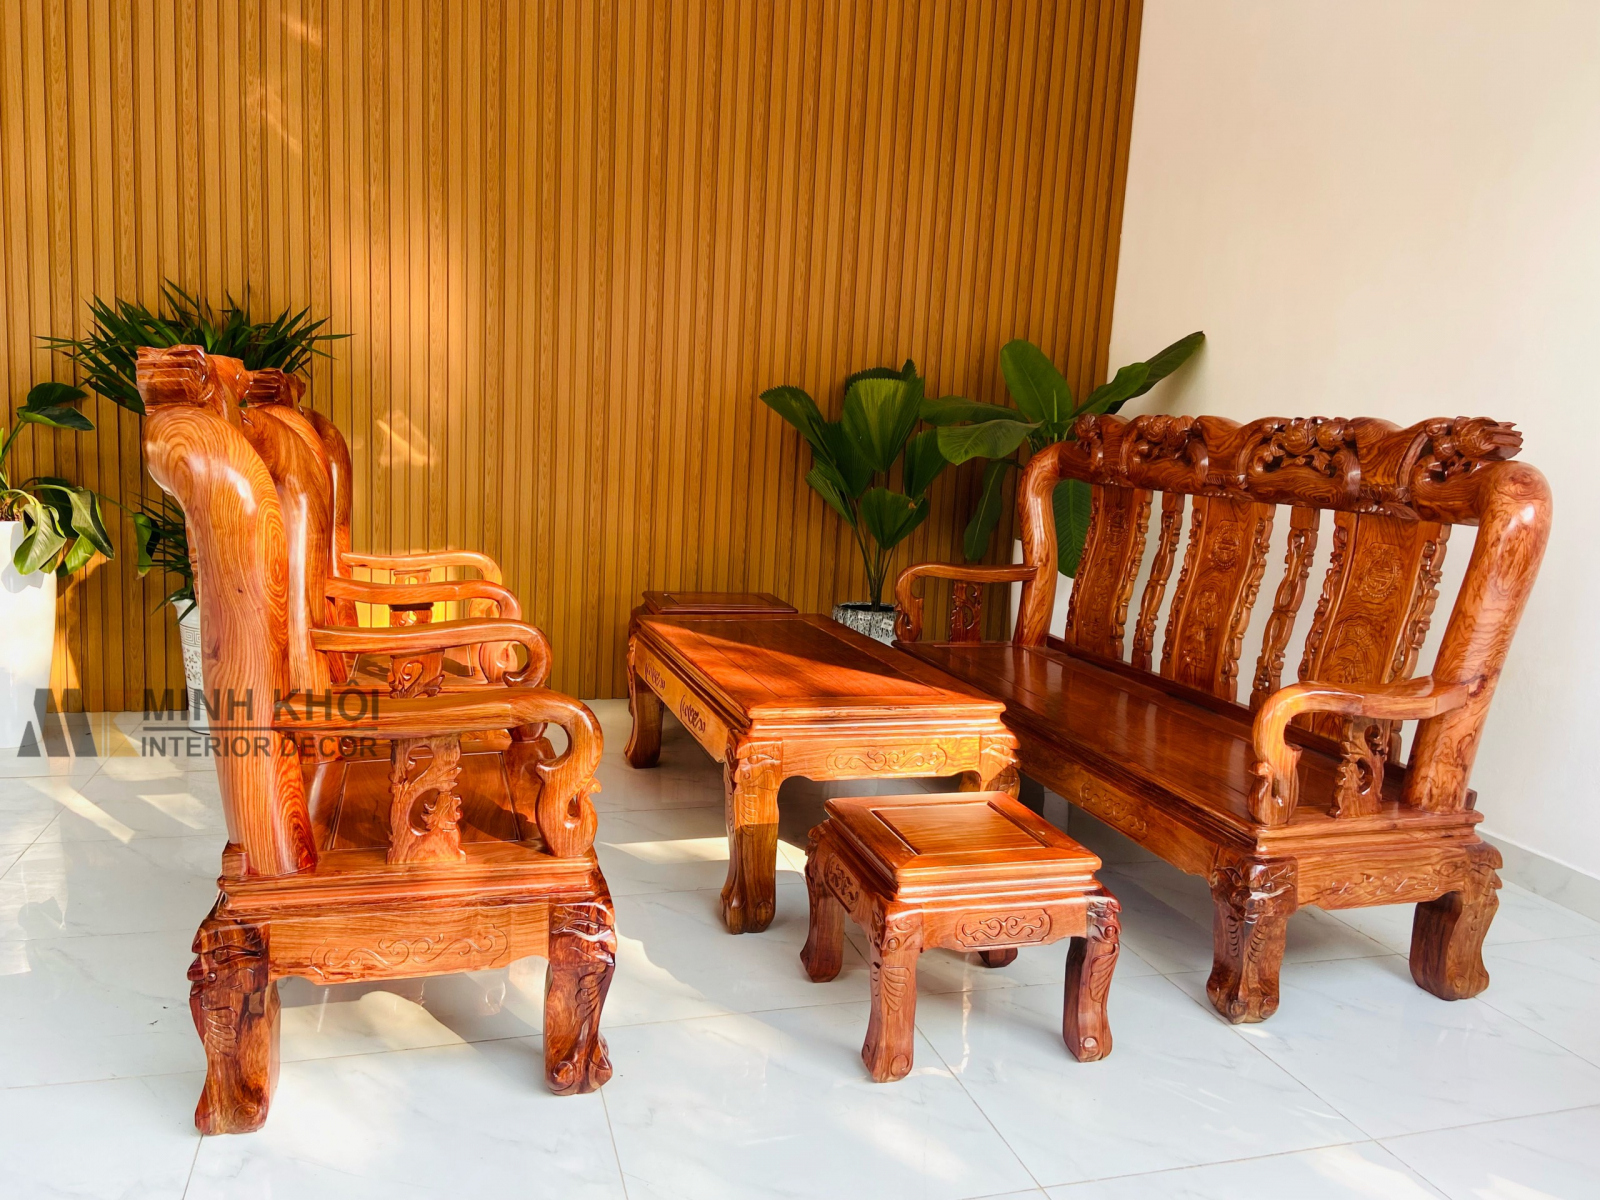 Bàn ghế gỗ hương đẹp: Tìm kiếm một bộ bàn ghế tạo điểm nhấn cho phòng khách của bạn? Bộ bàn ghế gỗ hương đẹp chắc chắn sẽ làm bạn hài lòng. Thiết kế đơn giản nhưng tinh tế, được làm từ gỗ hương tạo nên vẻ đẹp lịch sự nhưng không kém phần hiện đại. Hãy trân trọng gia tài của mình bằng việc sở hữu bộ bàn ghế gỗ hương đẹp này.